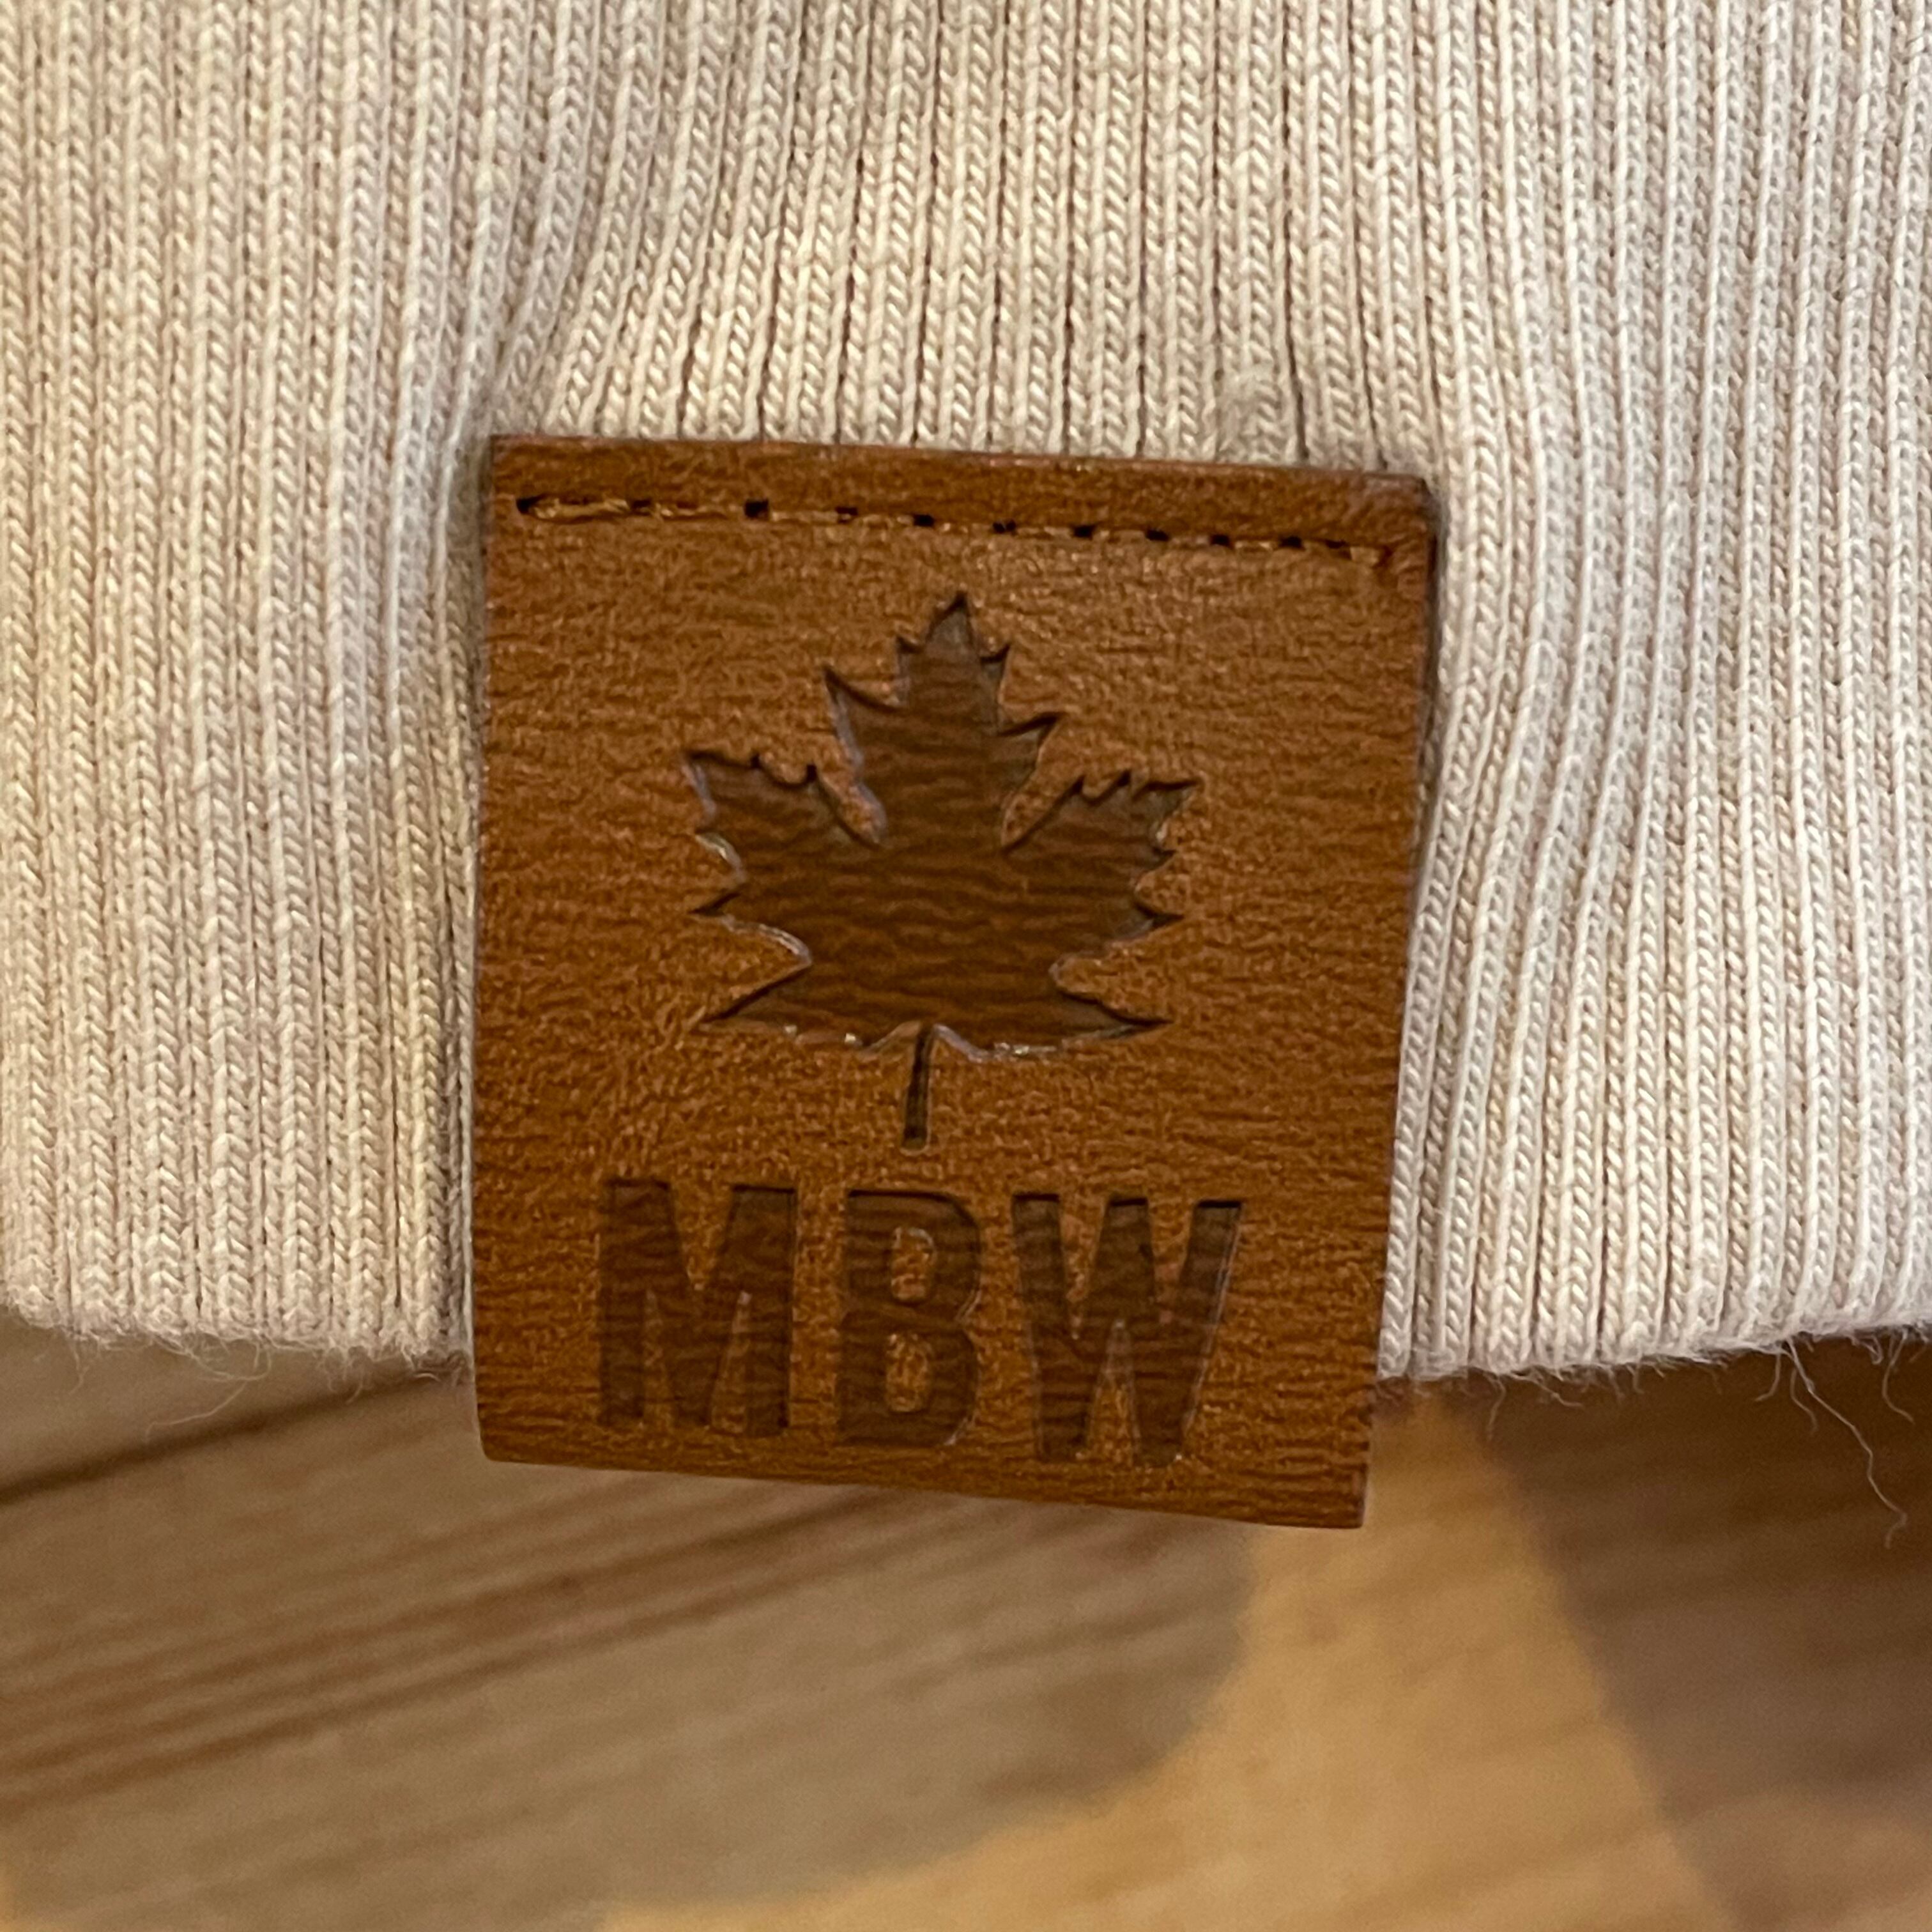 MUSKOKA BEAR GEAR】カナダ製 ハーフジップ スウェット 刺繍ロゴ ワン